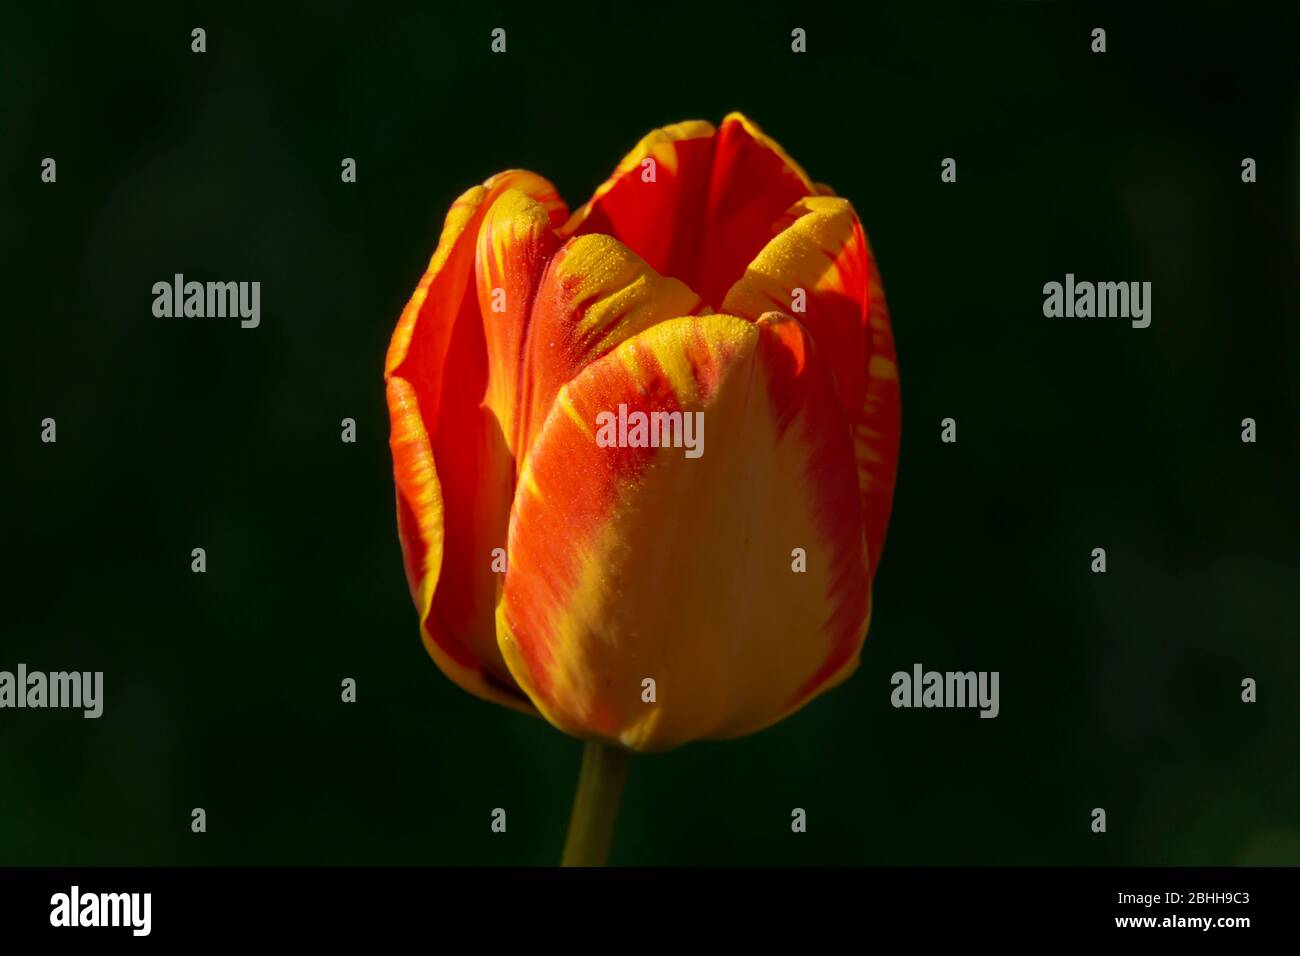 orange tulip close up Stock Photo